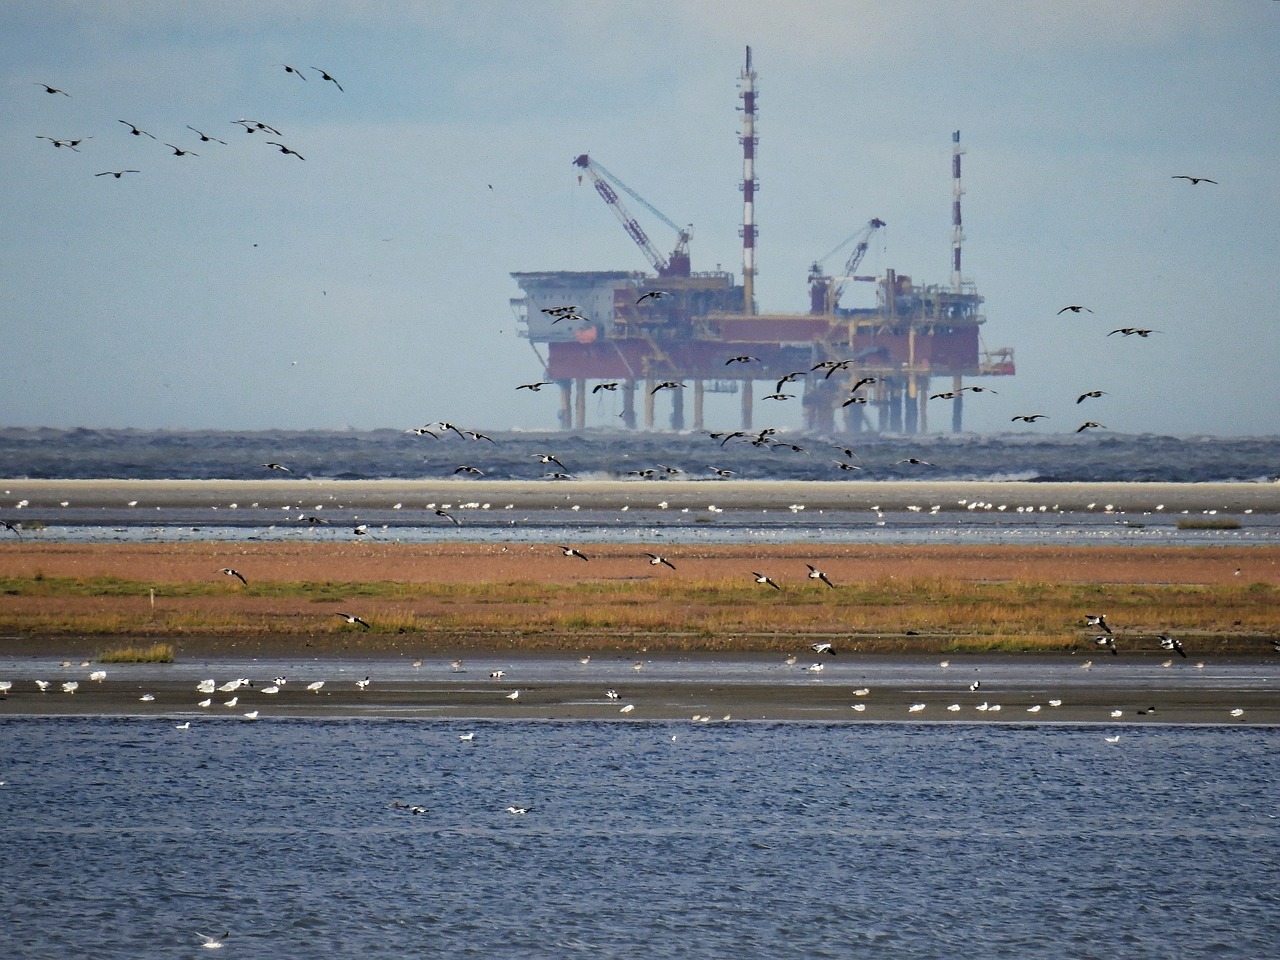 Oil rig on the coastline